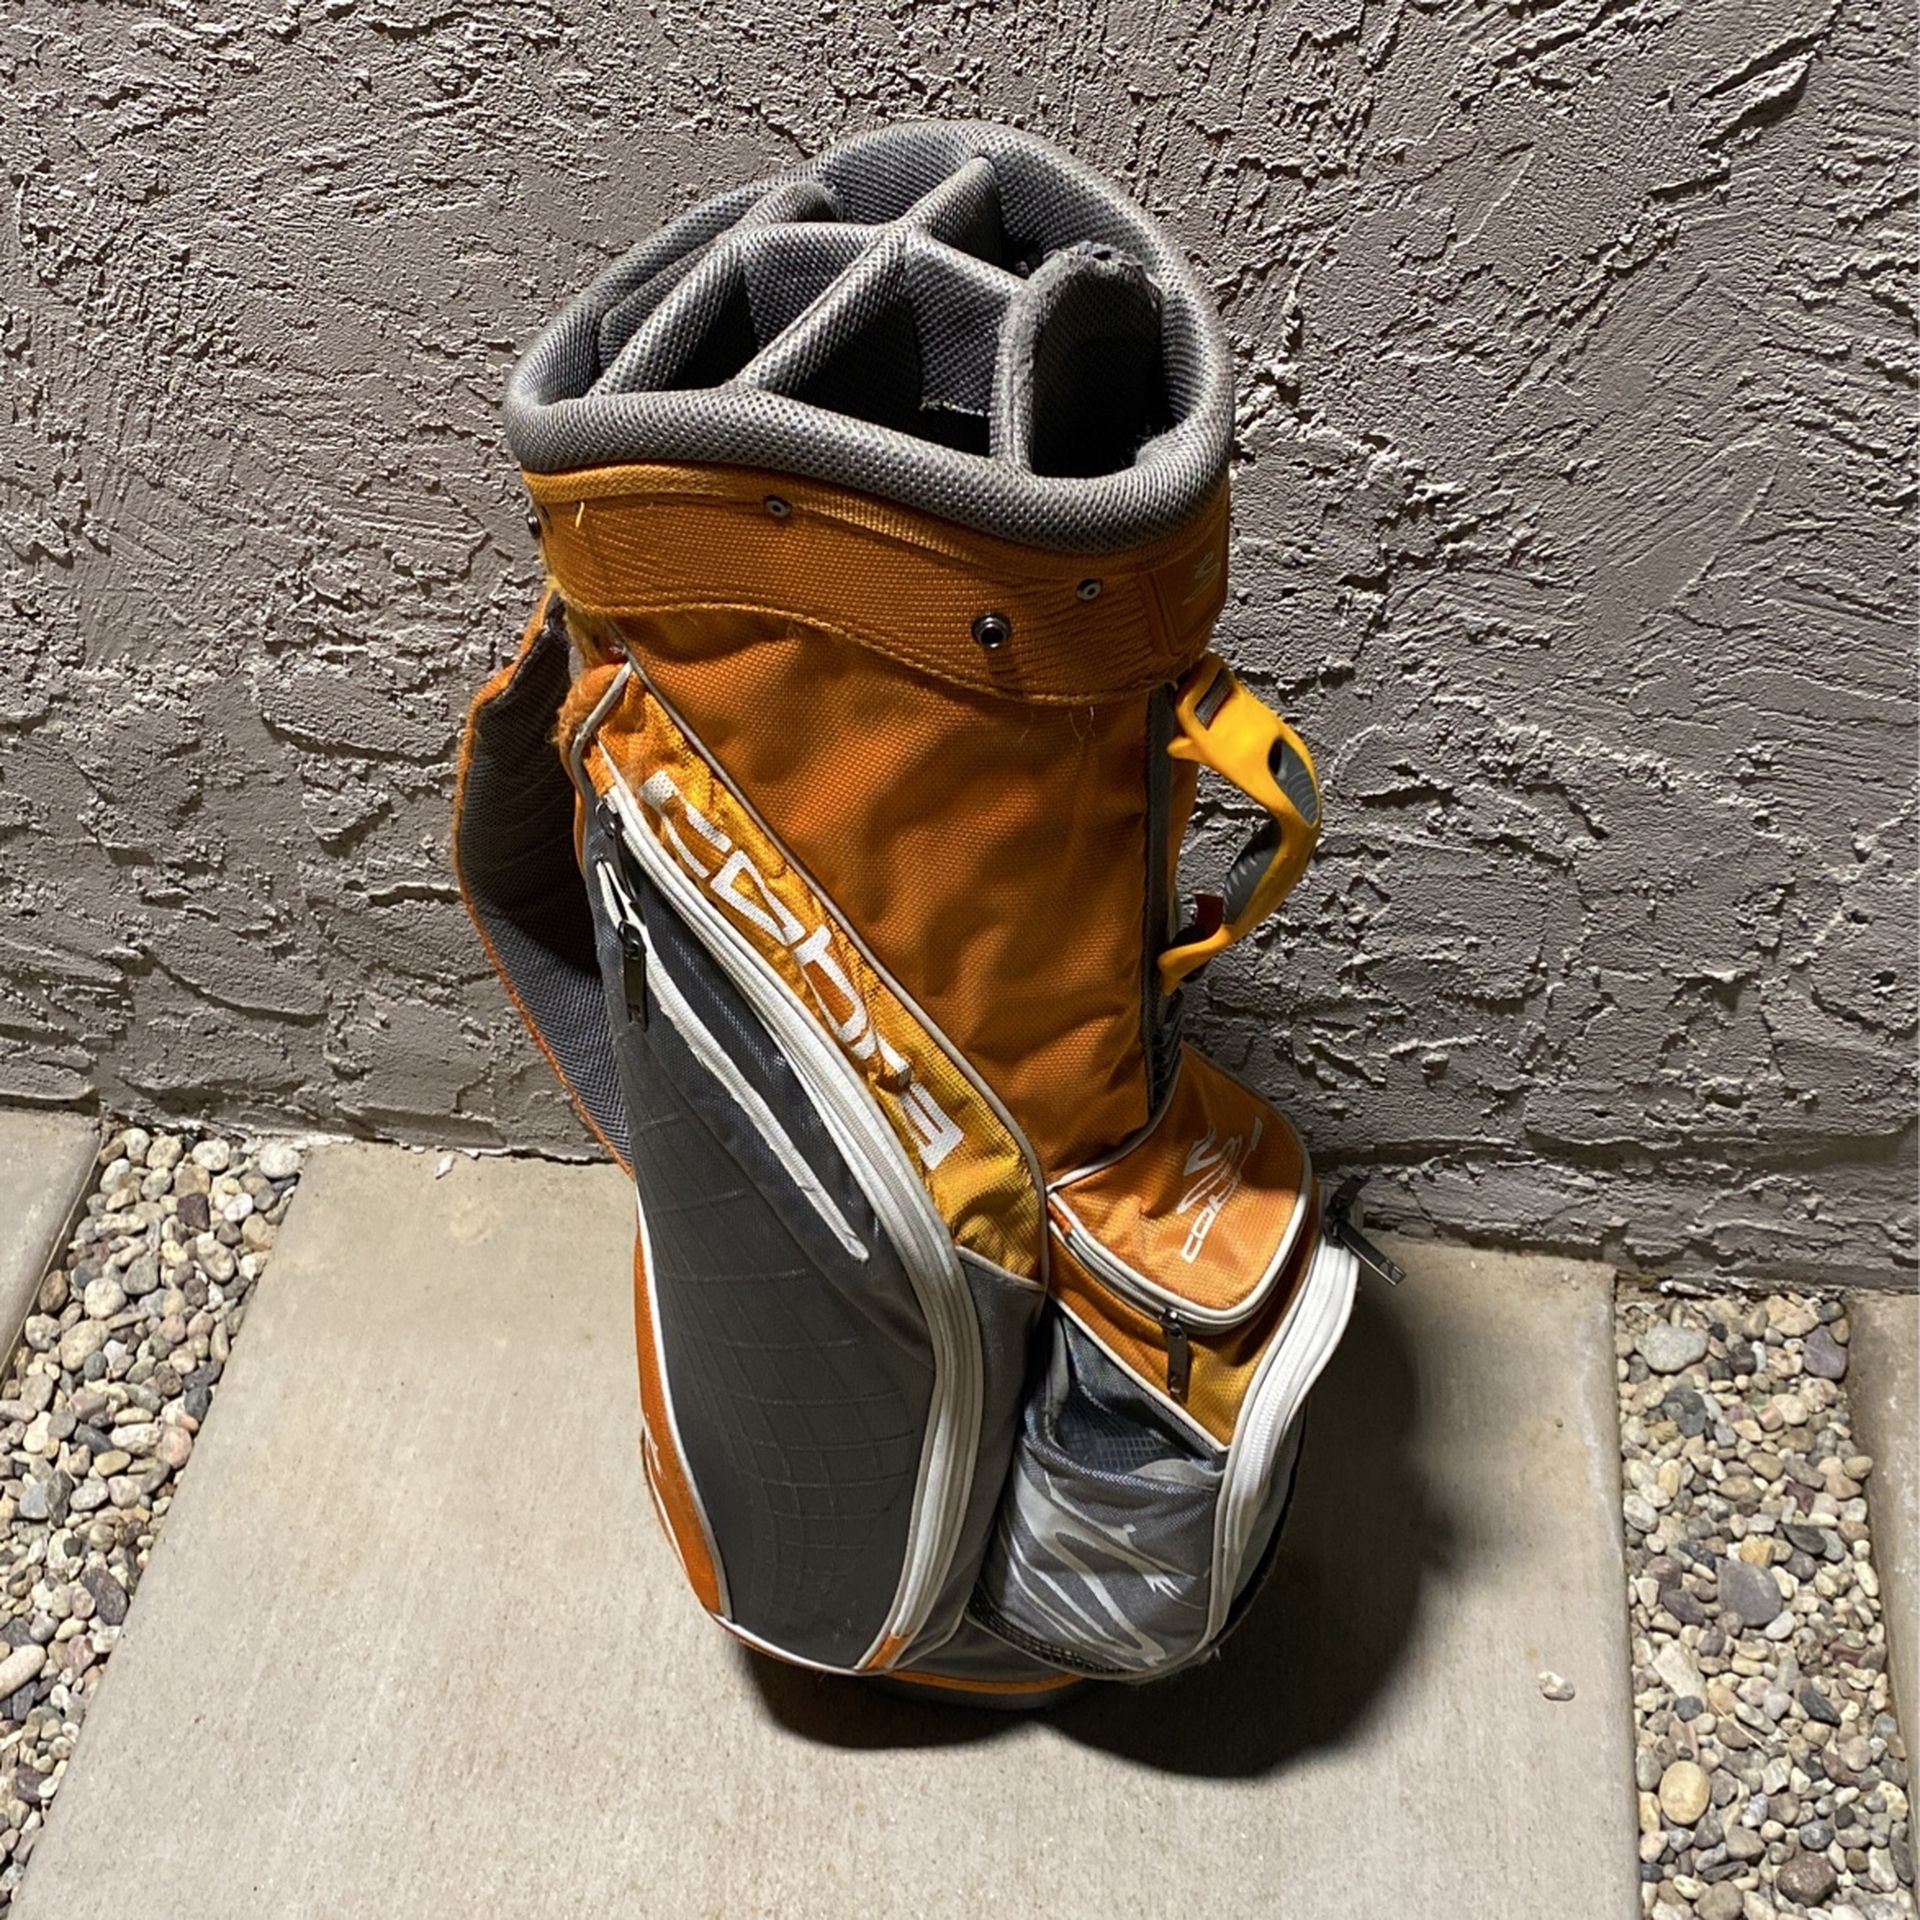 Cobra Golf Bag